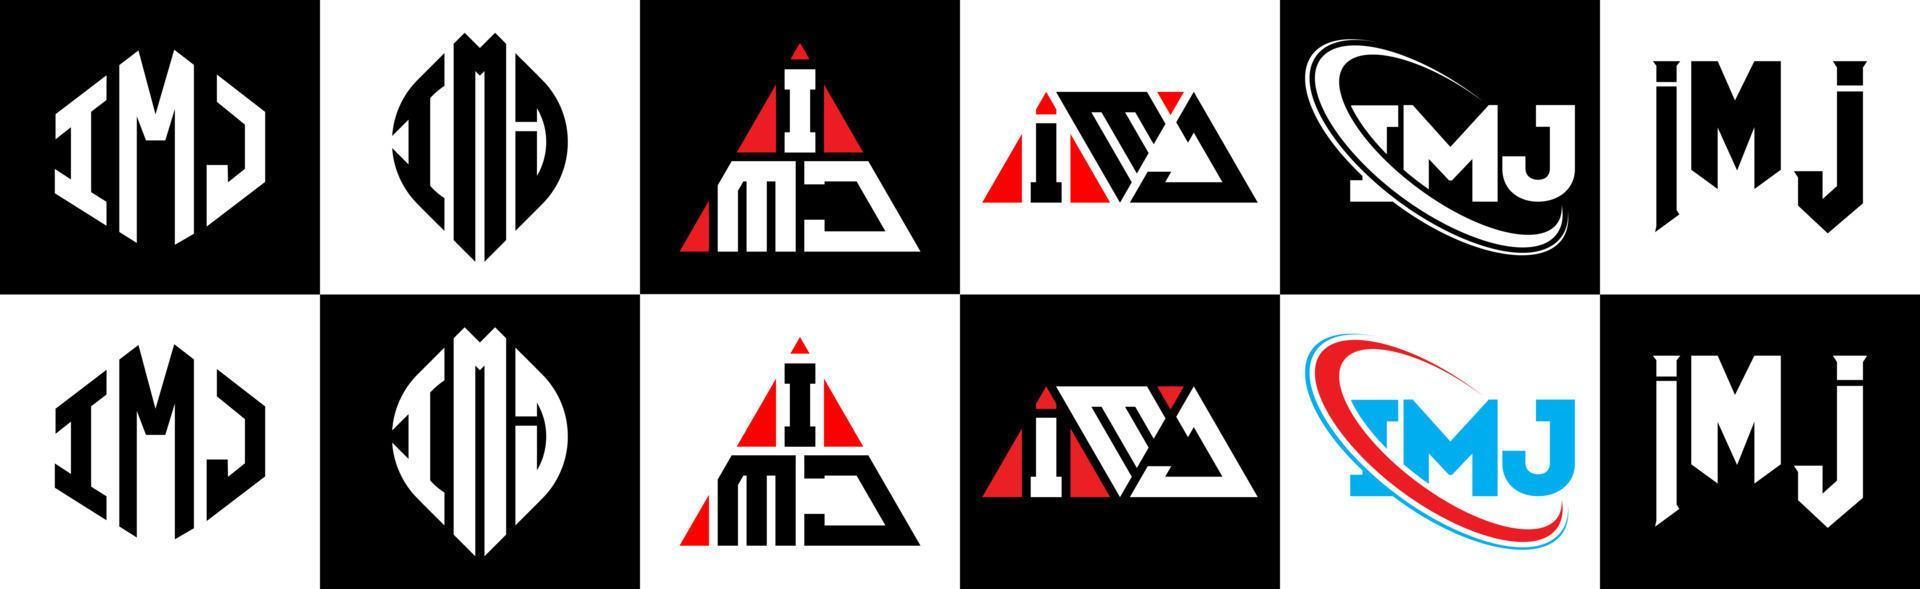 Diseño de logotipo de letra imj en seis estilos. imj polígono, círculo, triángulo, hexágono, estilo plano y simple con logotipo de letra de variación de color blanco y negro en una mesa de trabajo. logotipo minimalista y clásico de imj vector